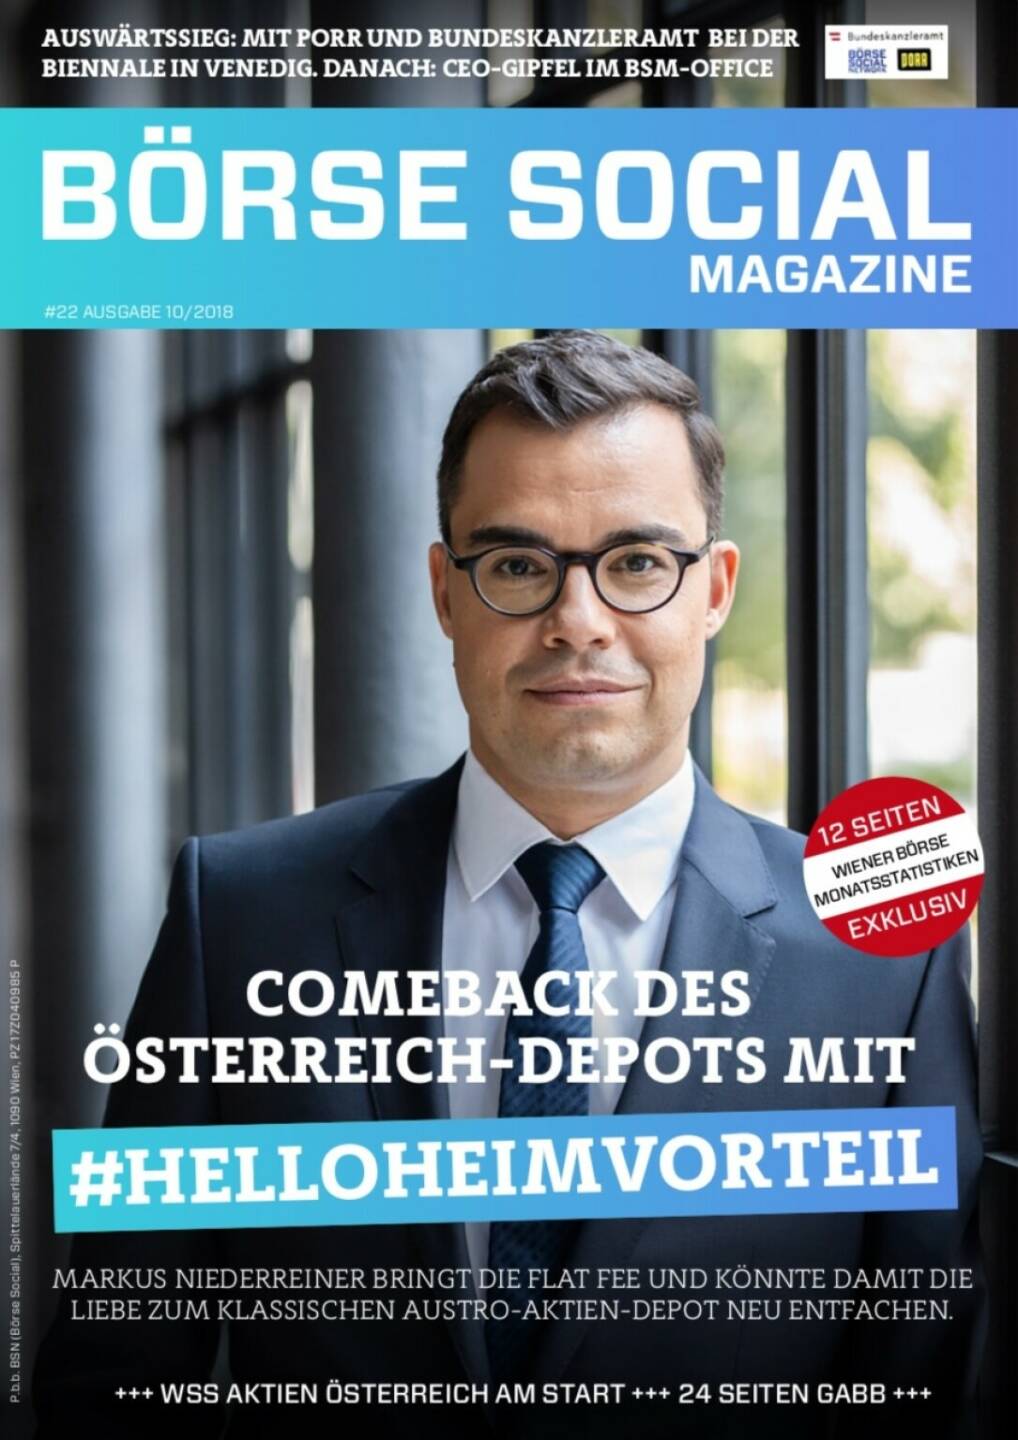 Magazine #22 - Oktober 2018: Hello bank bringt ein Produkt mit Home bias, als Medium mit Home bias war uns das ein Cover wert